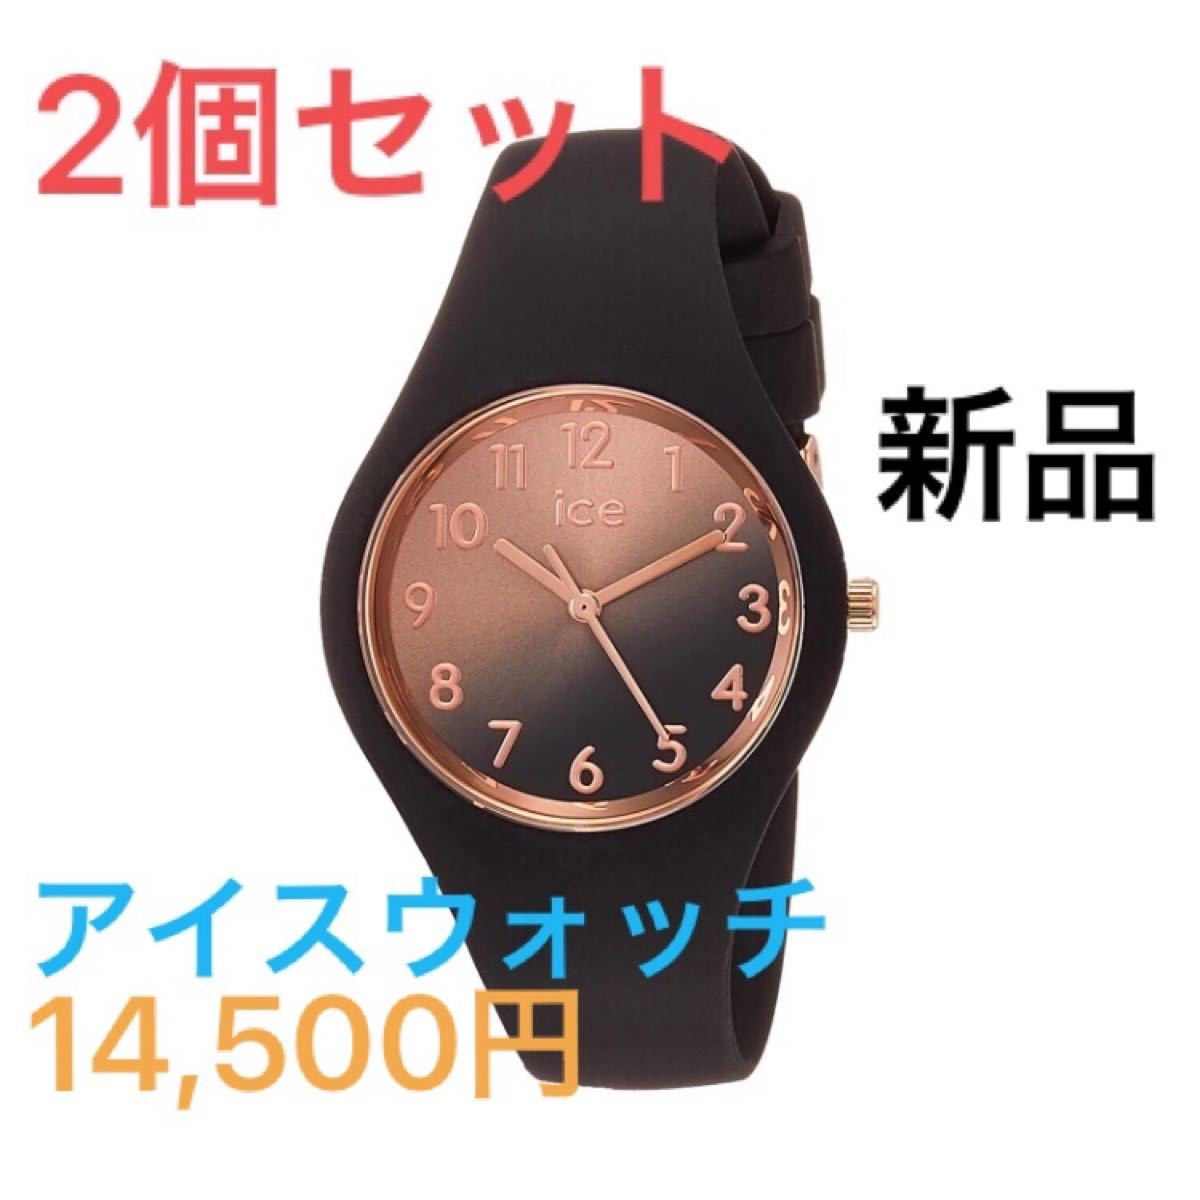 【新品未使用】2個セット [アイスウォッチ] 腕時計 ICE sunset 015746 レディース ブラック [並行輸入品]